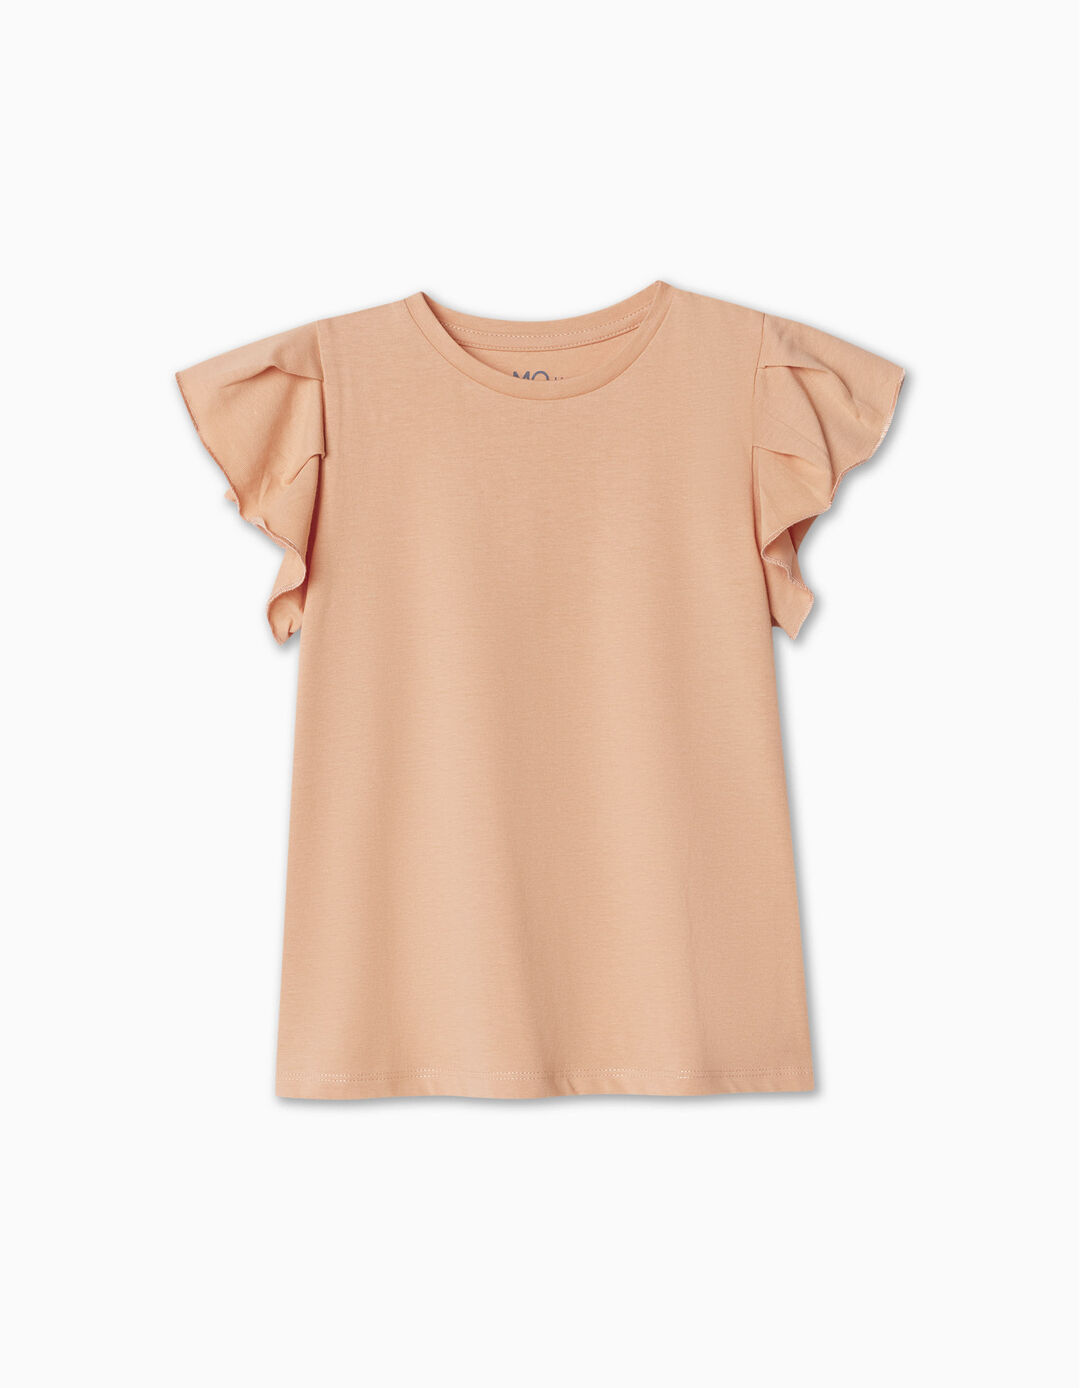 Ruffled T-shirt, Girl, Light Orange